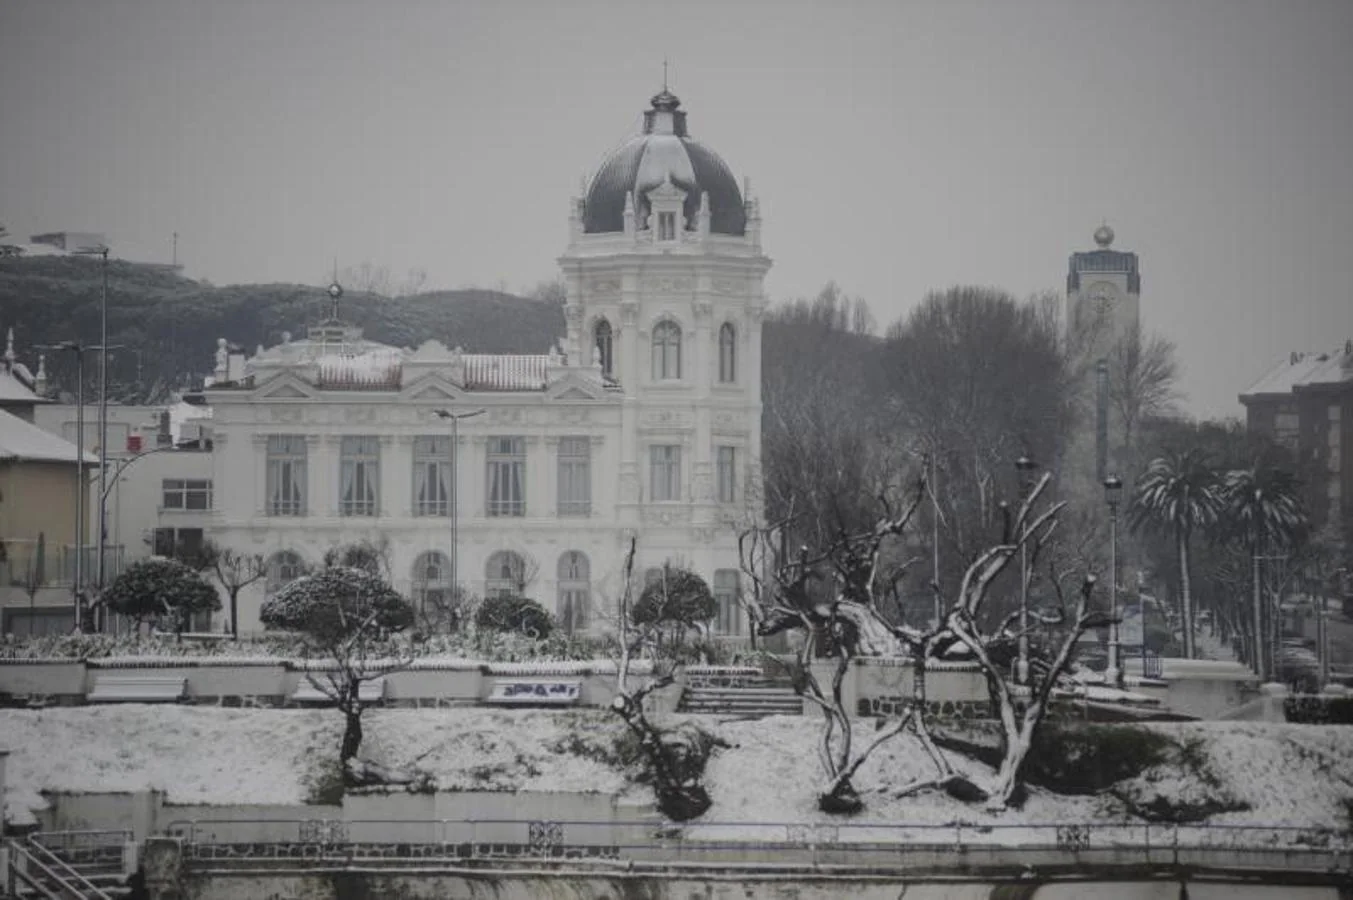 Fotos: Nieve en Santander